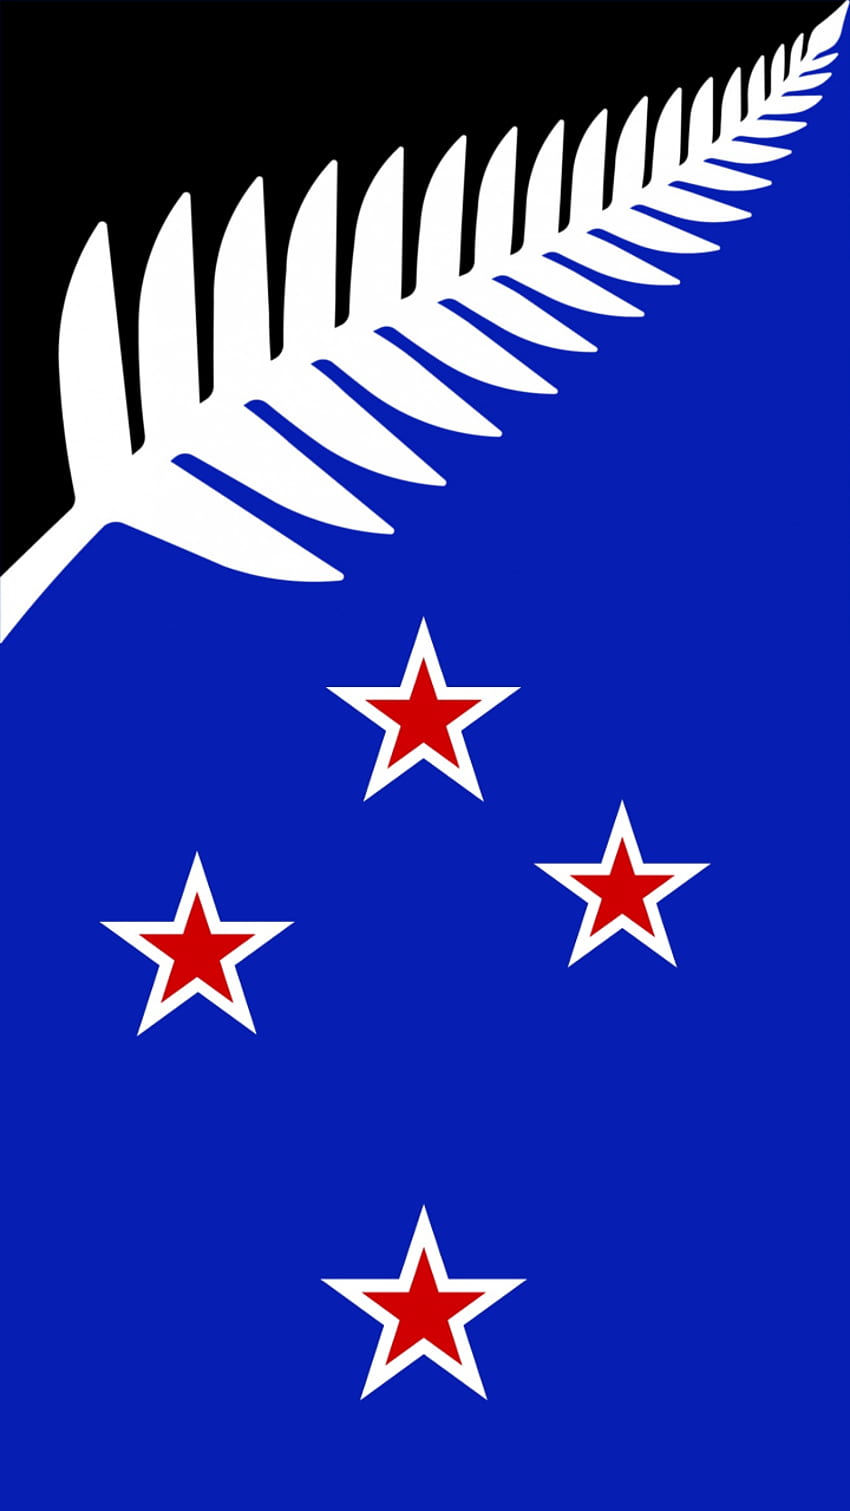 Hice la bandera 227 para teléfonos móviles. Disfrute, bandera de Nueva Zelanda fondo de pantalla del teléfono